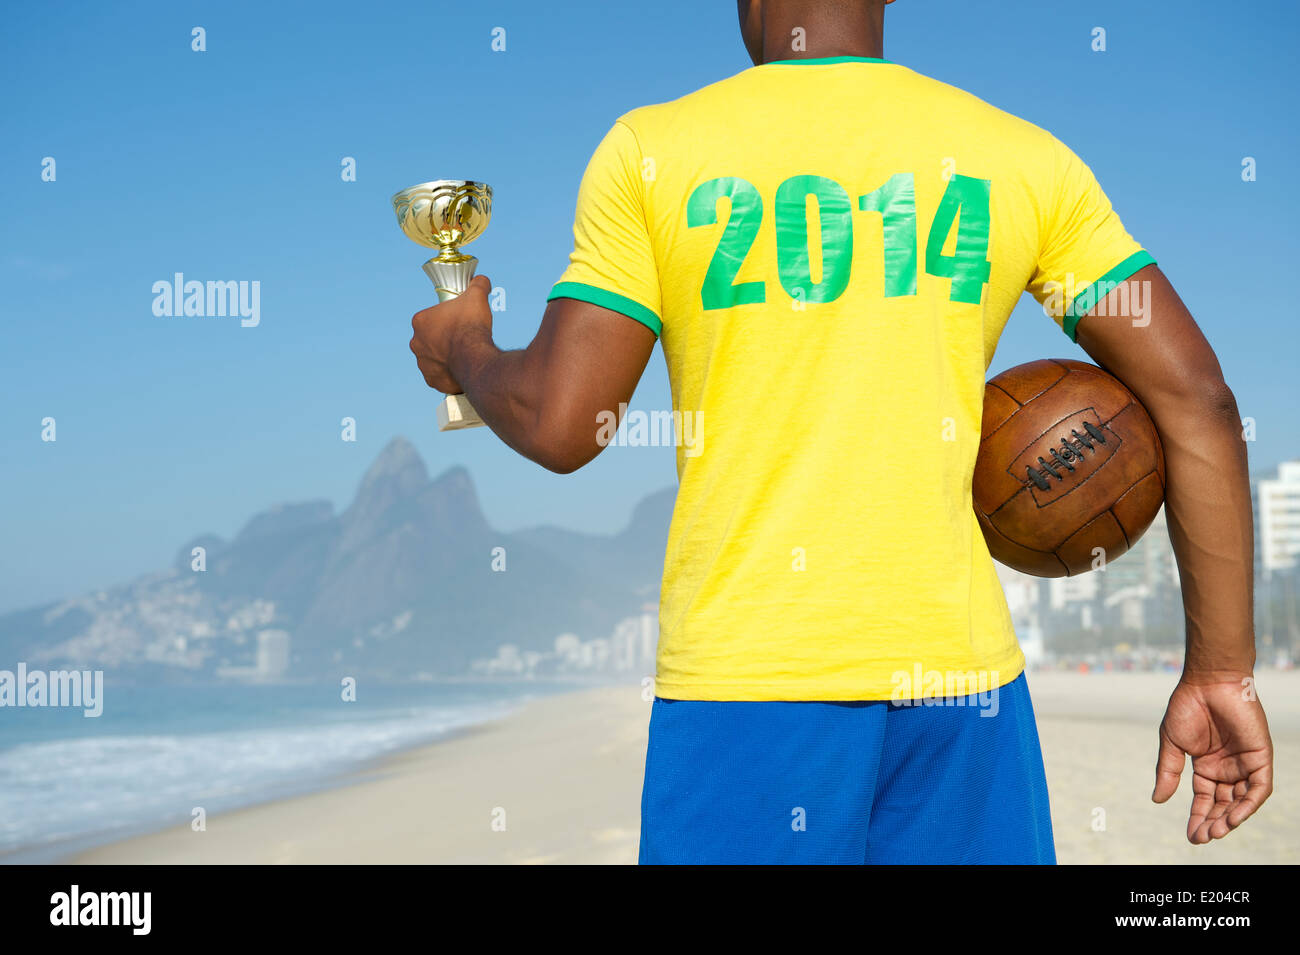 Vainqueur brésilien Champion soccer player holding trophy et football shirt 2014 vintage dans la plage d'Ipanema Rio de Janeiro Brésil Banque D'Images